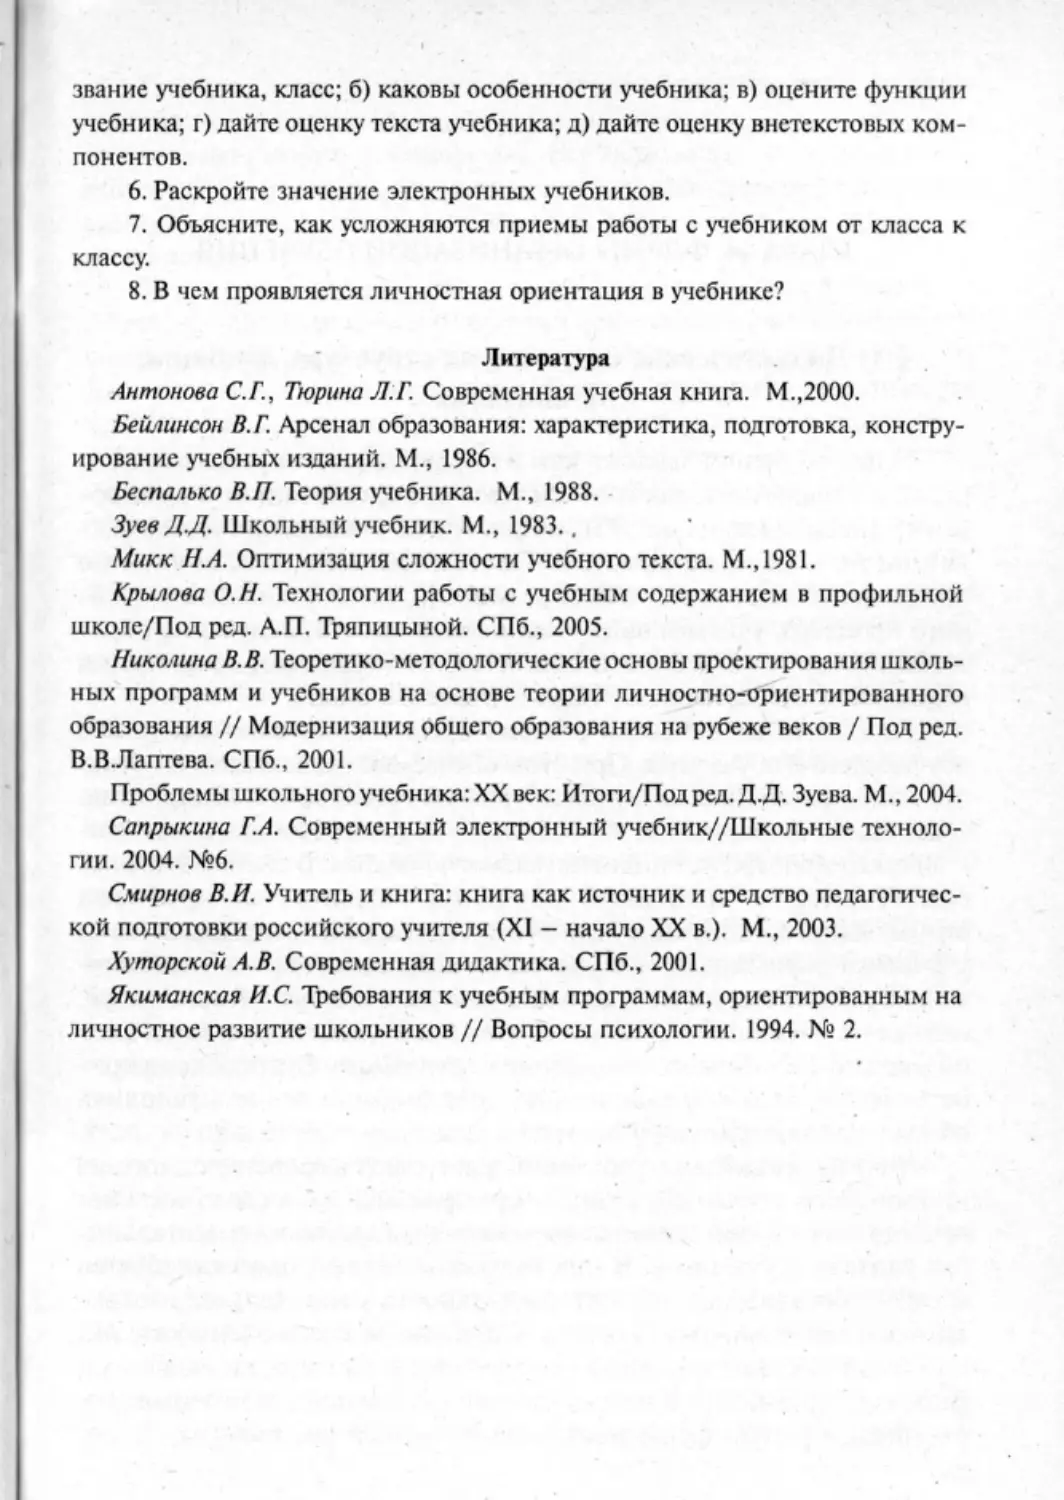 Загрекова Л.В., Николаева В.В - 0296